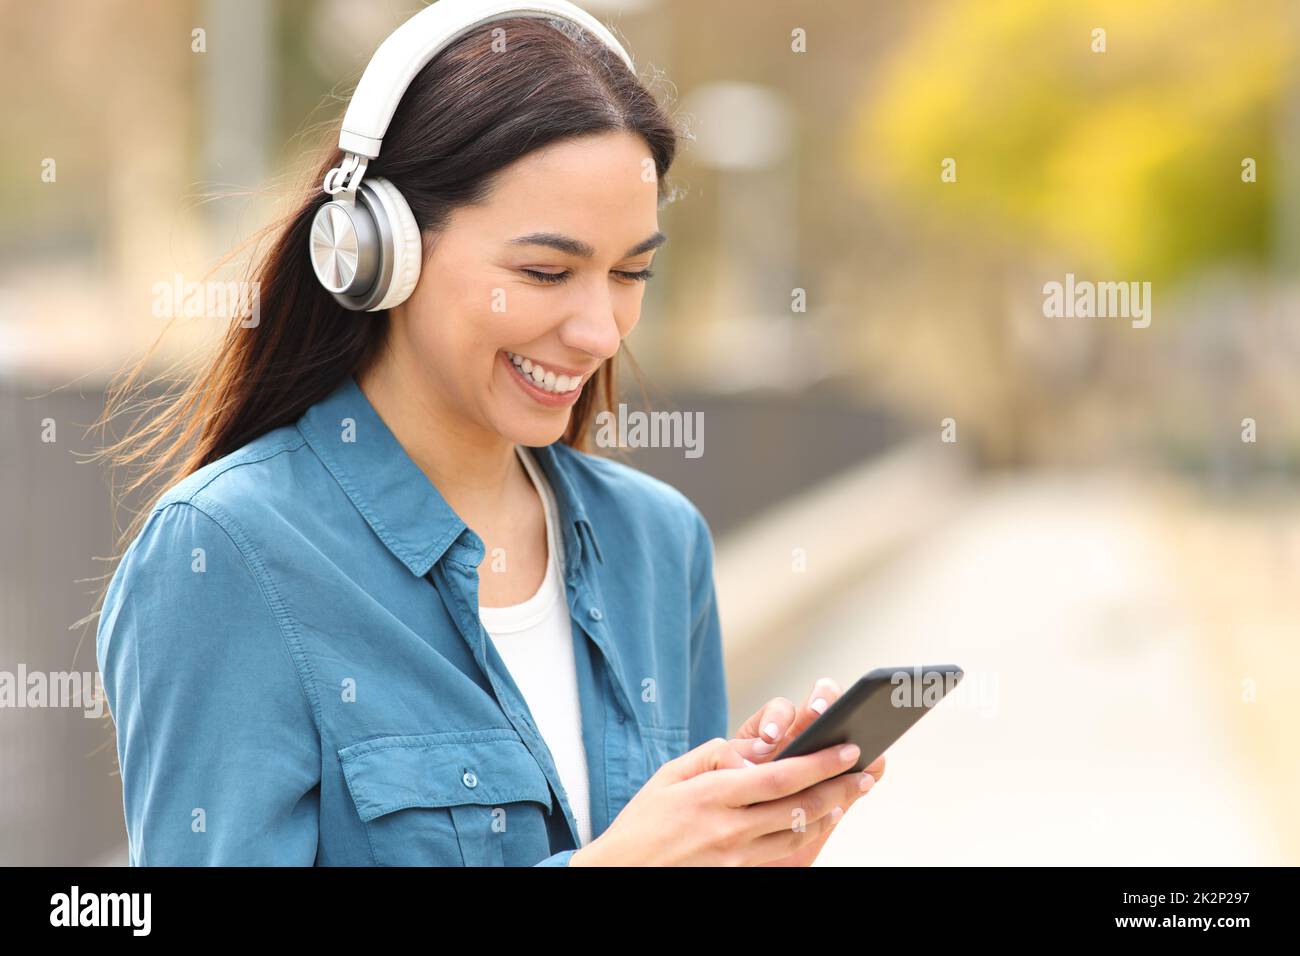 Une femme heureuse écoute de la musique ou regarde des médias sur son téléphone Banque D'Images